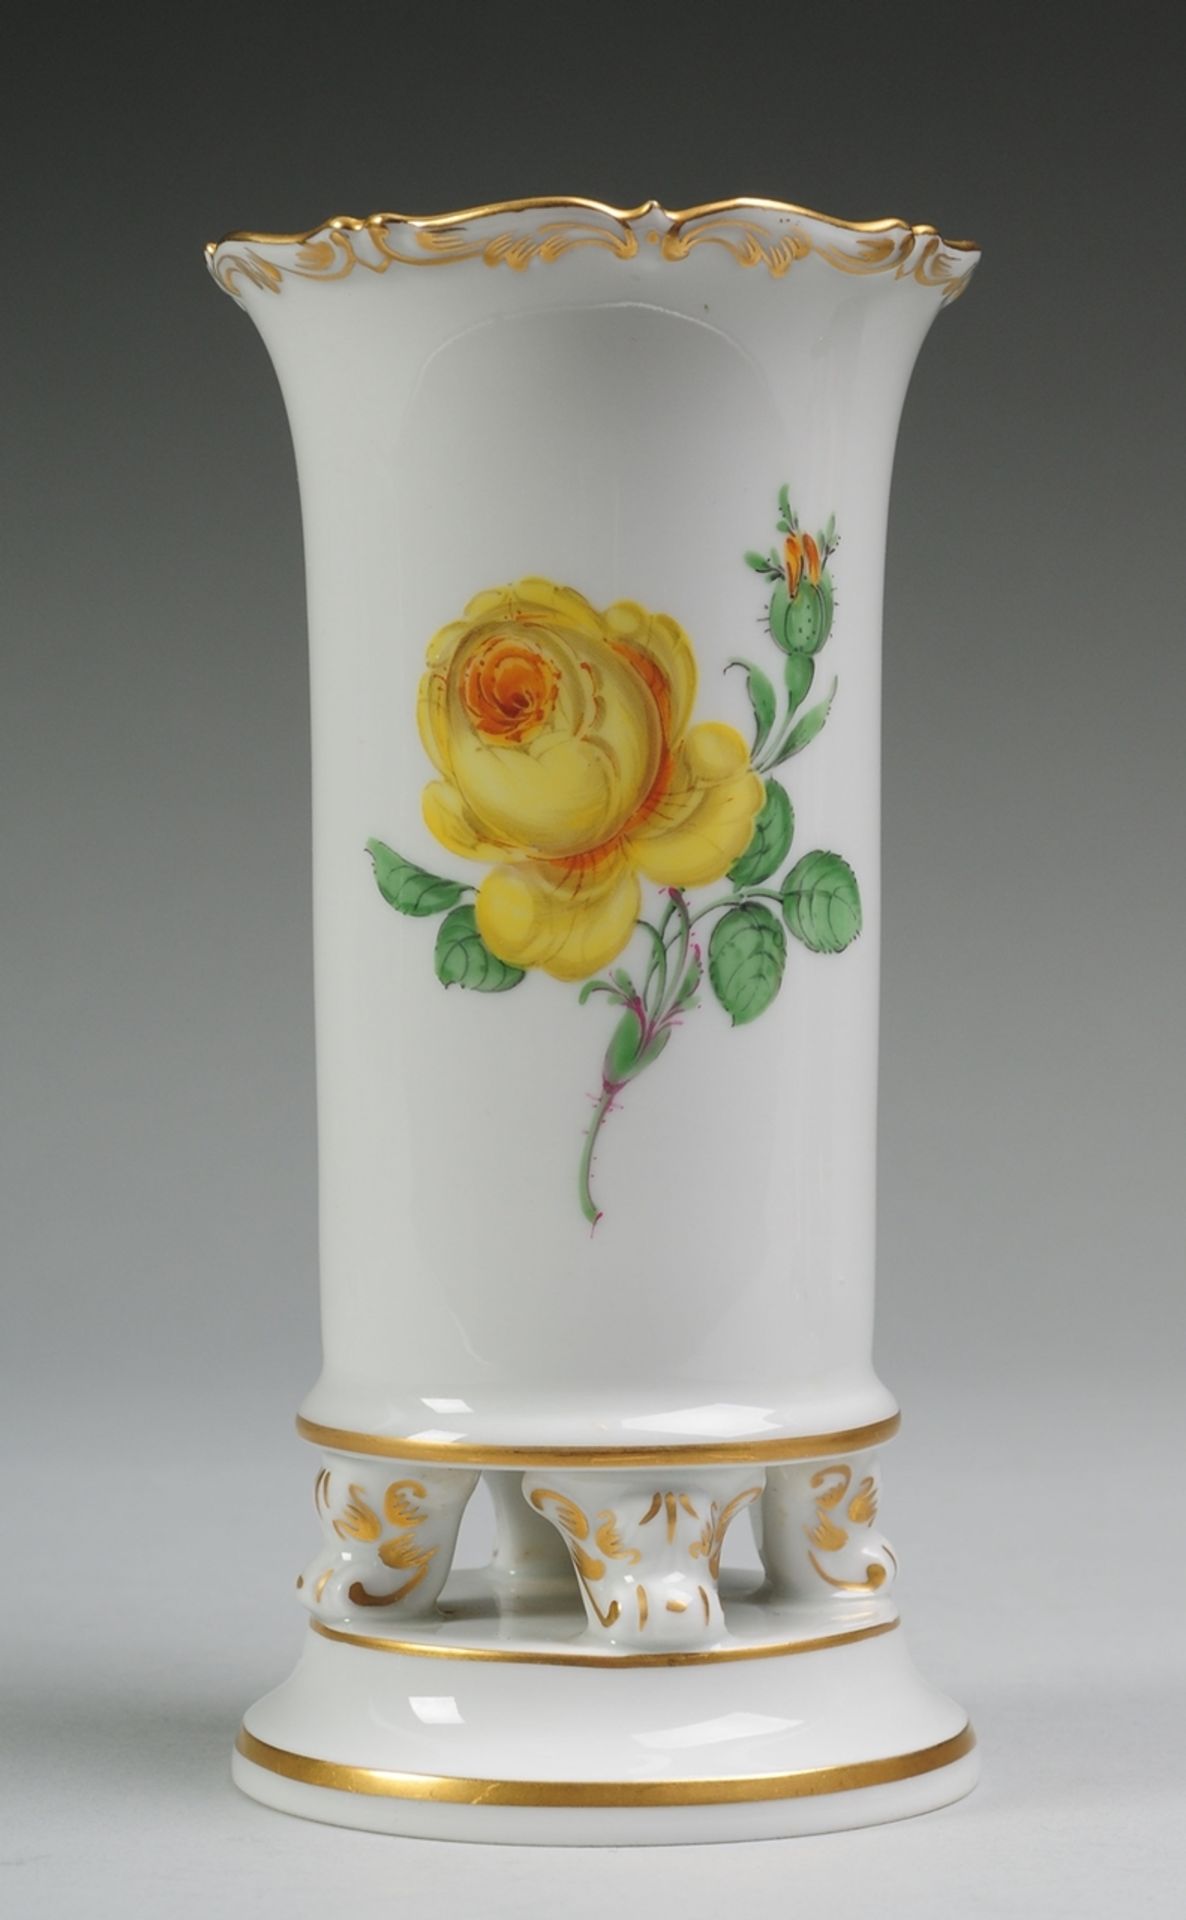 Füßchenvase "Gelbe Rose"Weiß, glasiert. Über rundem Profilsockel u. 4 Volutenfüßchen zy